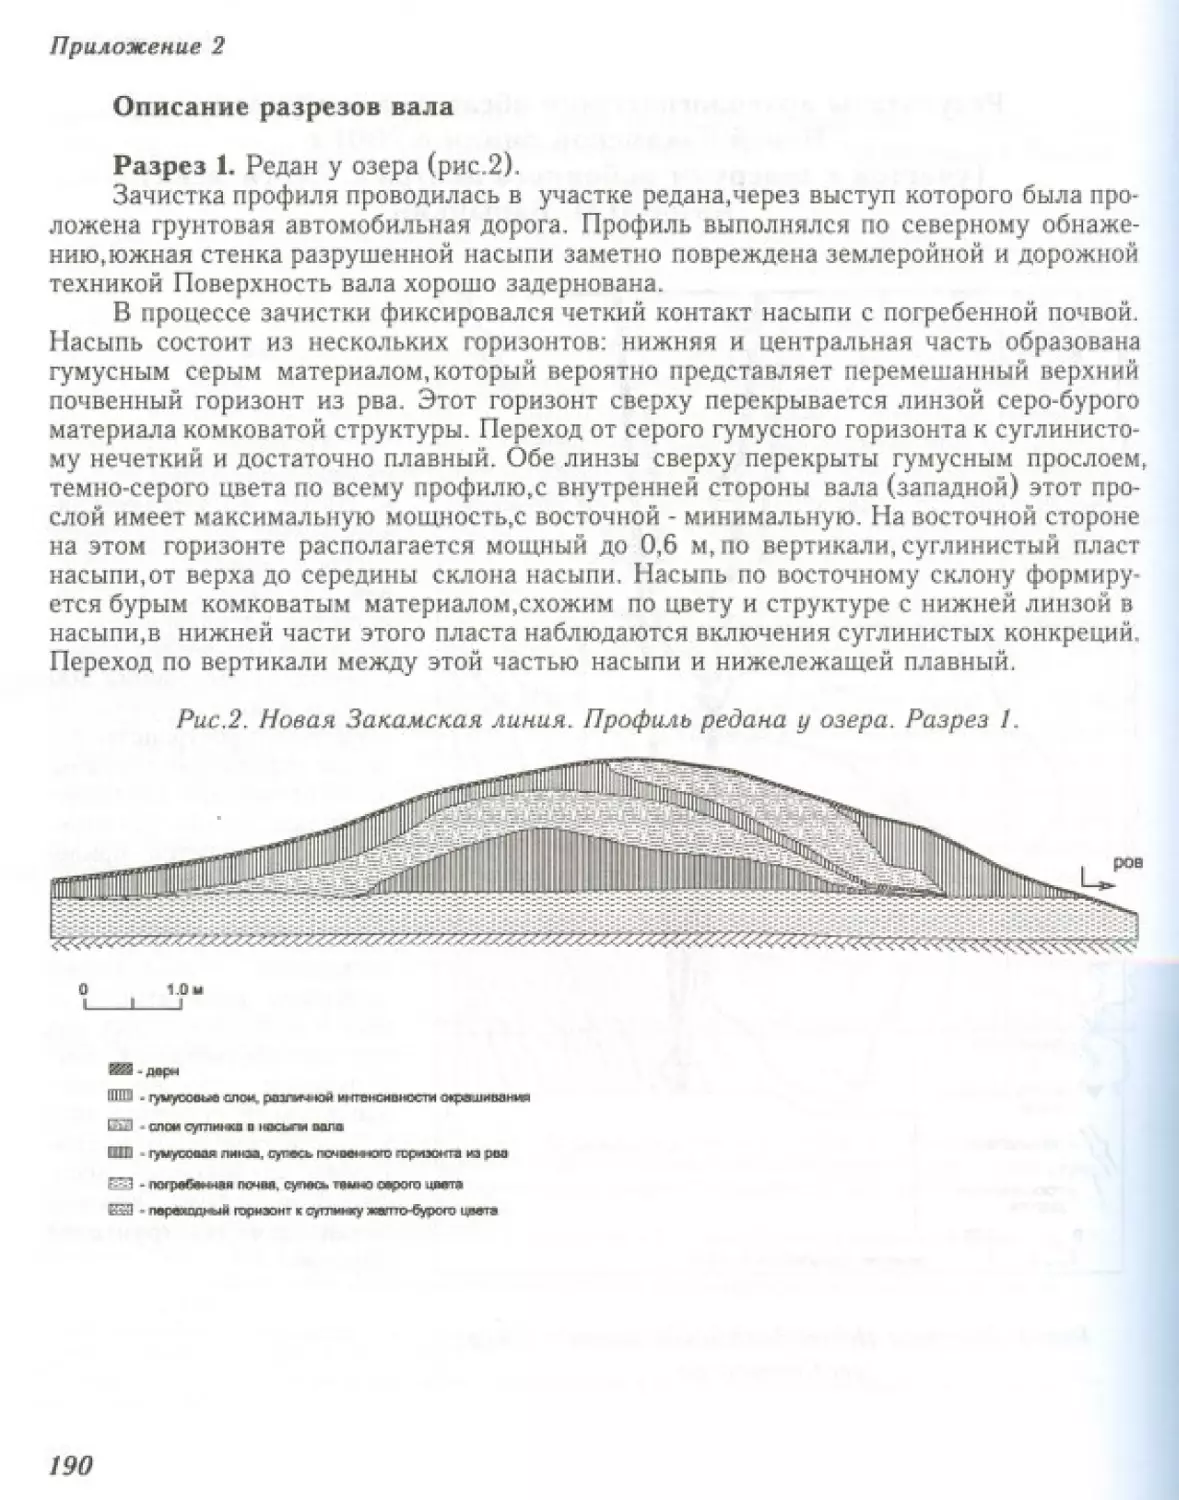 Вал0192.pdf (p.191)